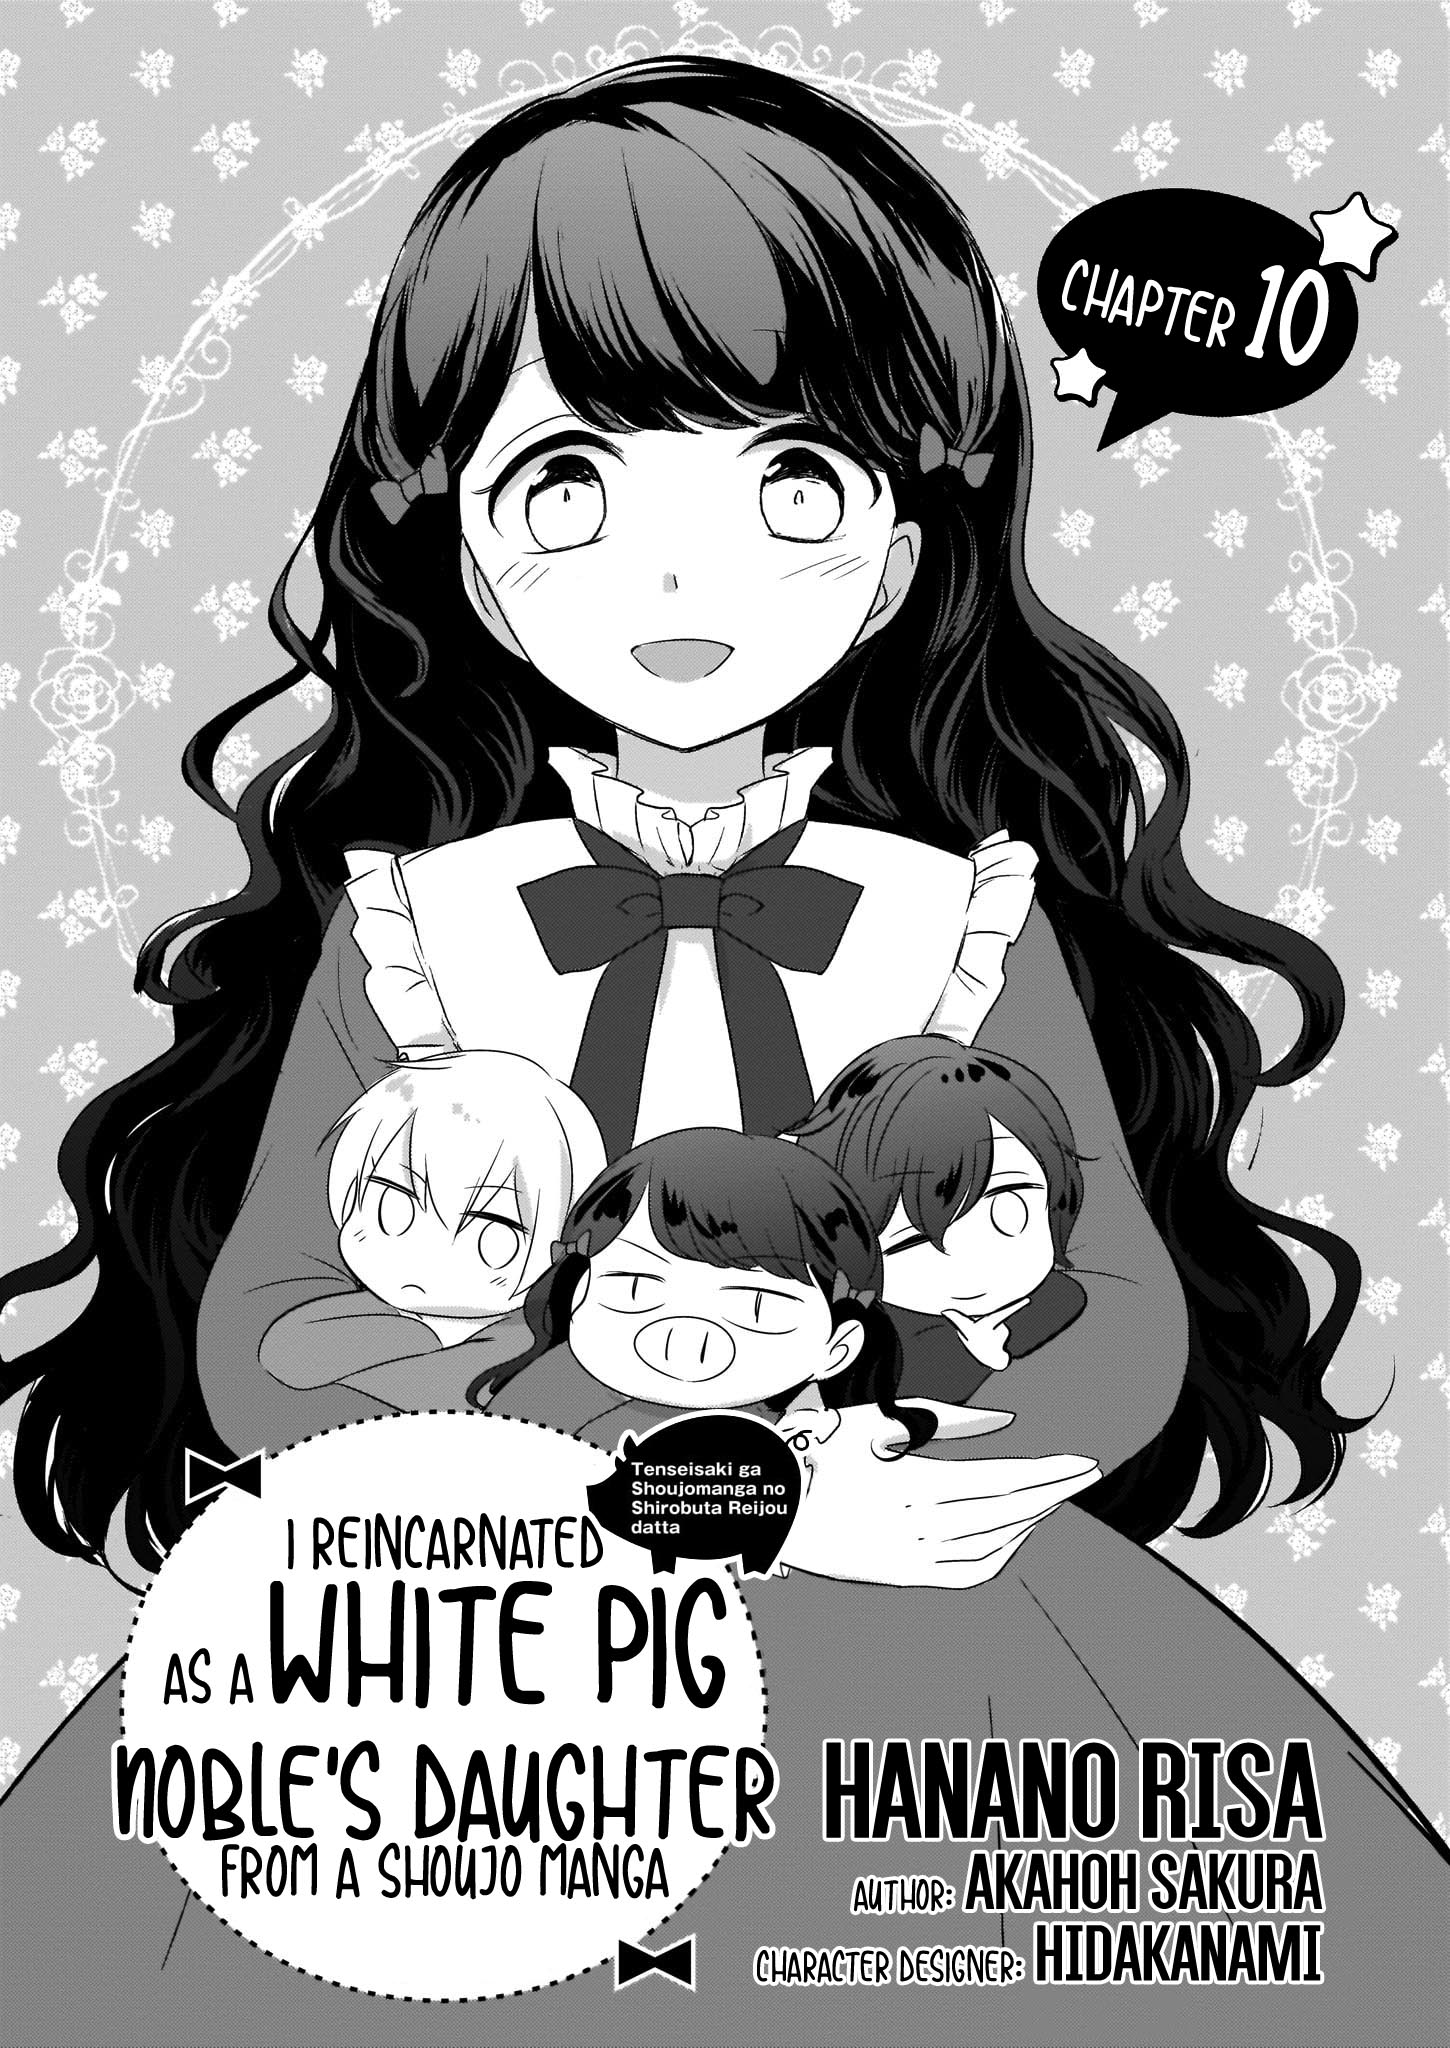 Tensei Saki Ga Shoujo Manga No Shiro Buta Reijou Datta Chapter 10 #2